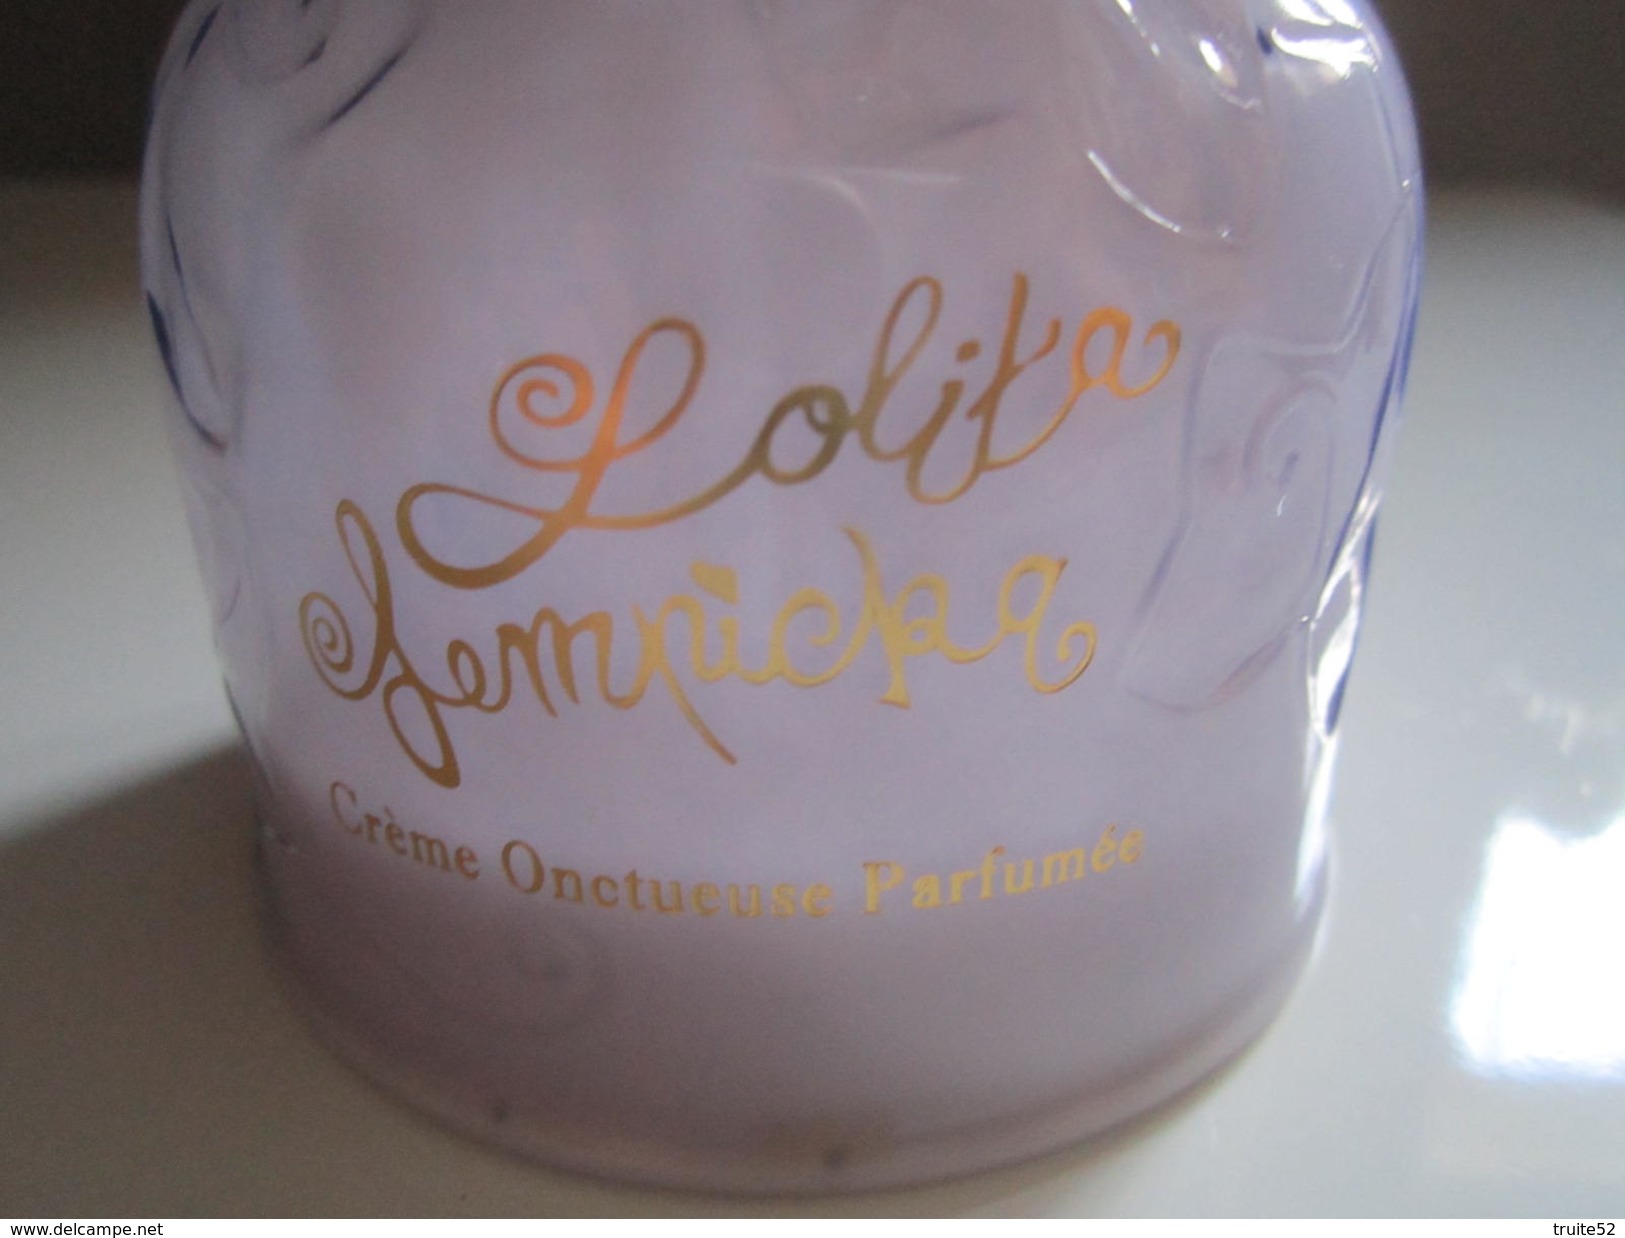 Le Premier Parfum Crème Onctueuse PARFUMEE 300 Ml LOLITA LEMPICKA - Flacons (vides)